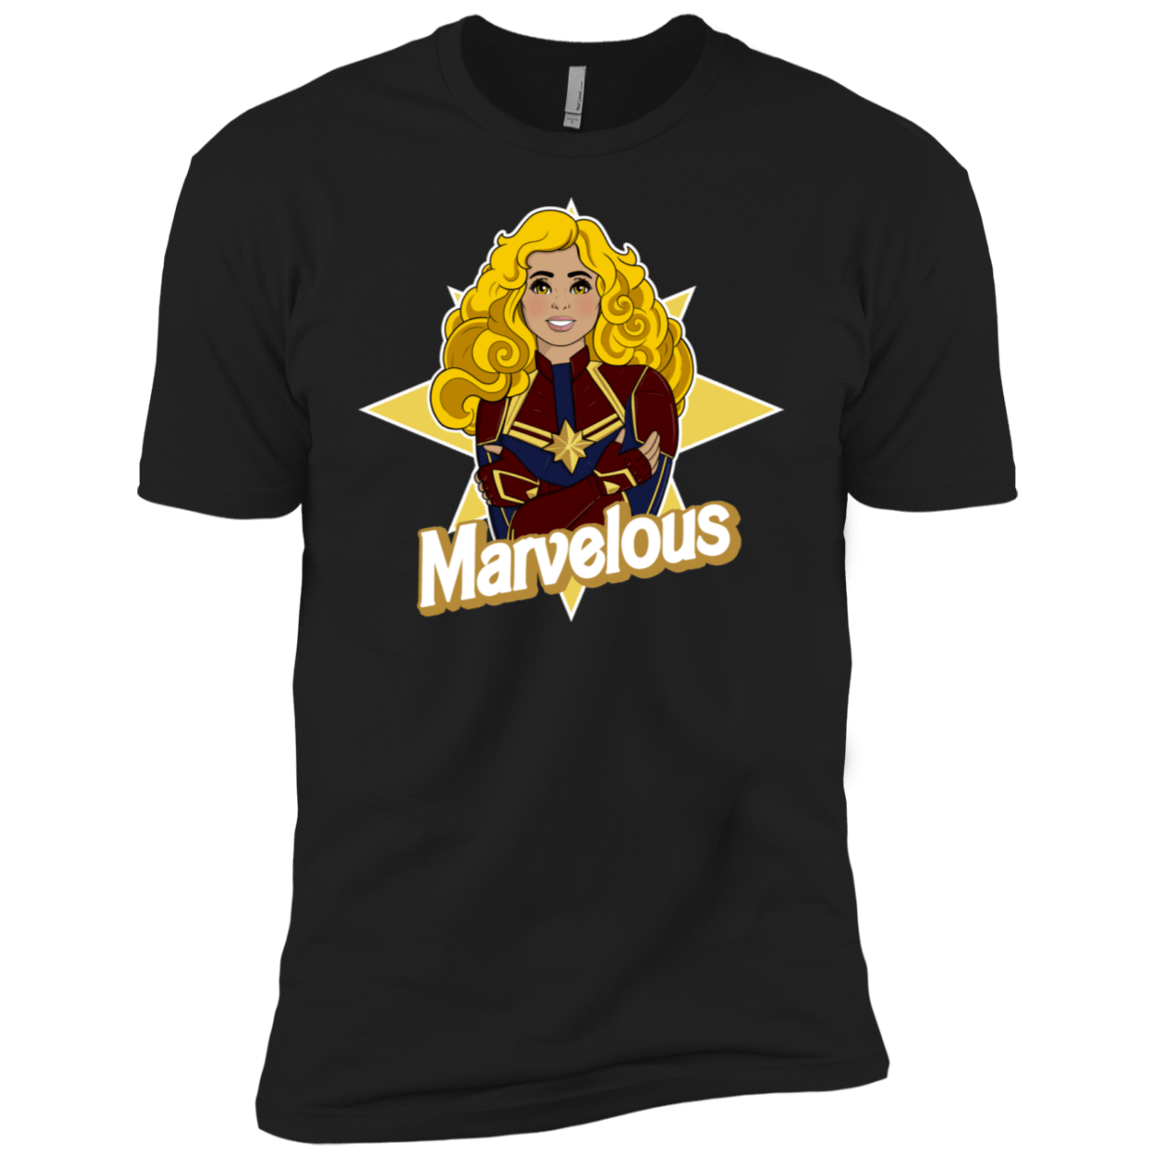 T-Shirts Black / X-Small Marvelous Men's Premium T-Shirt